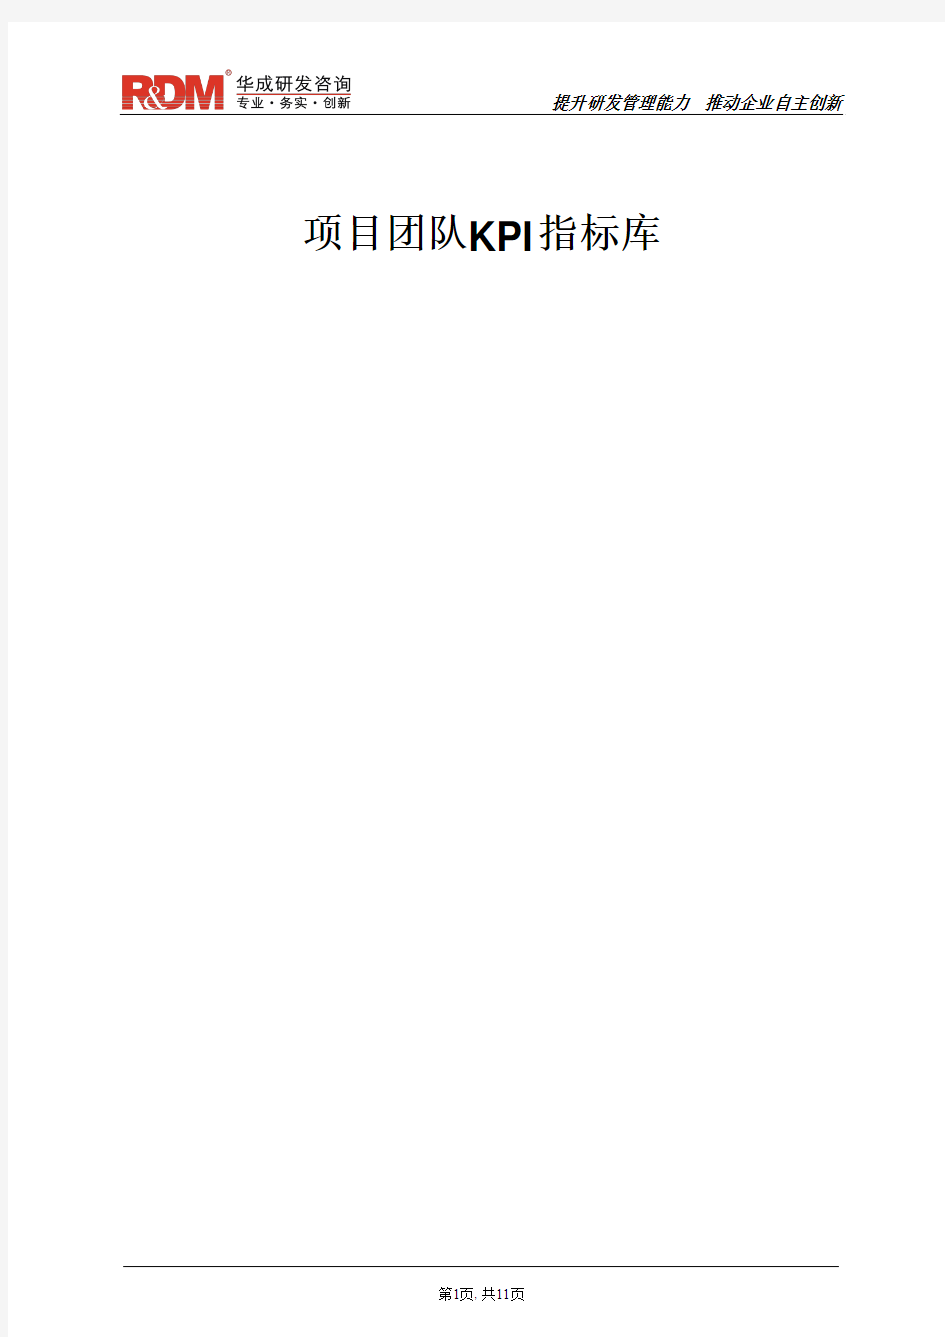 032项目团队KPI指标库